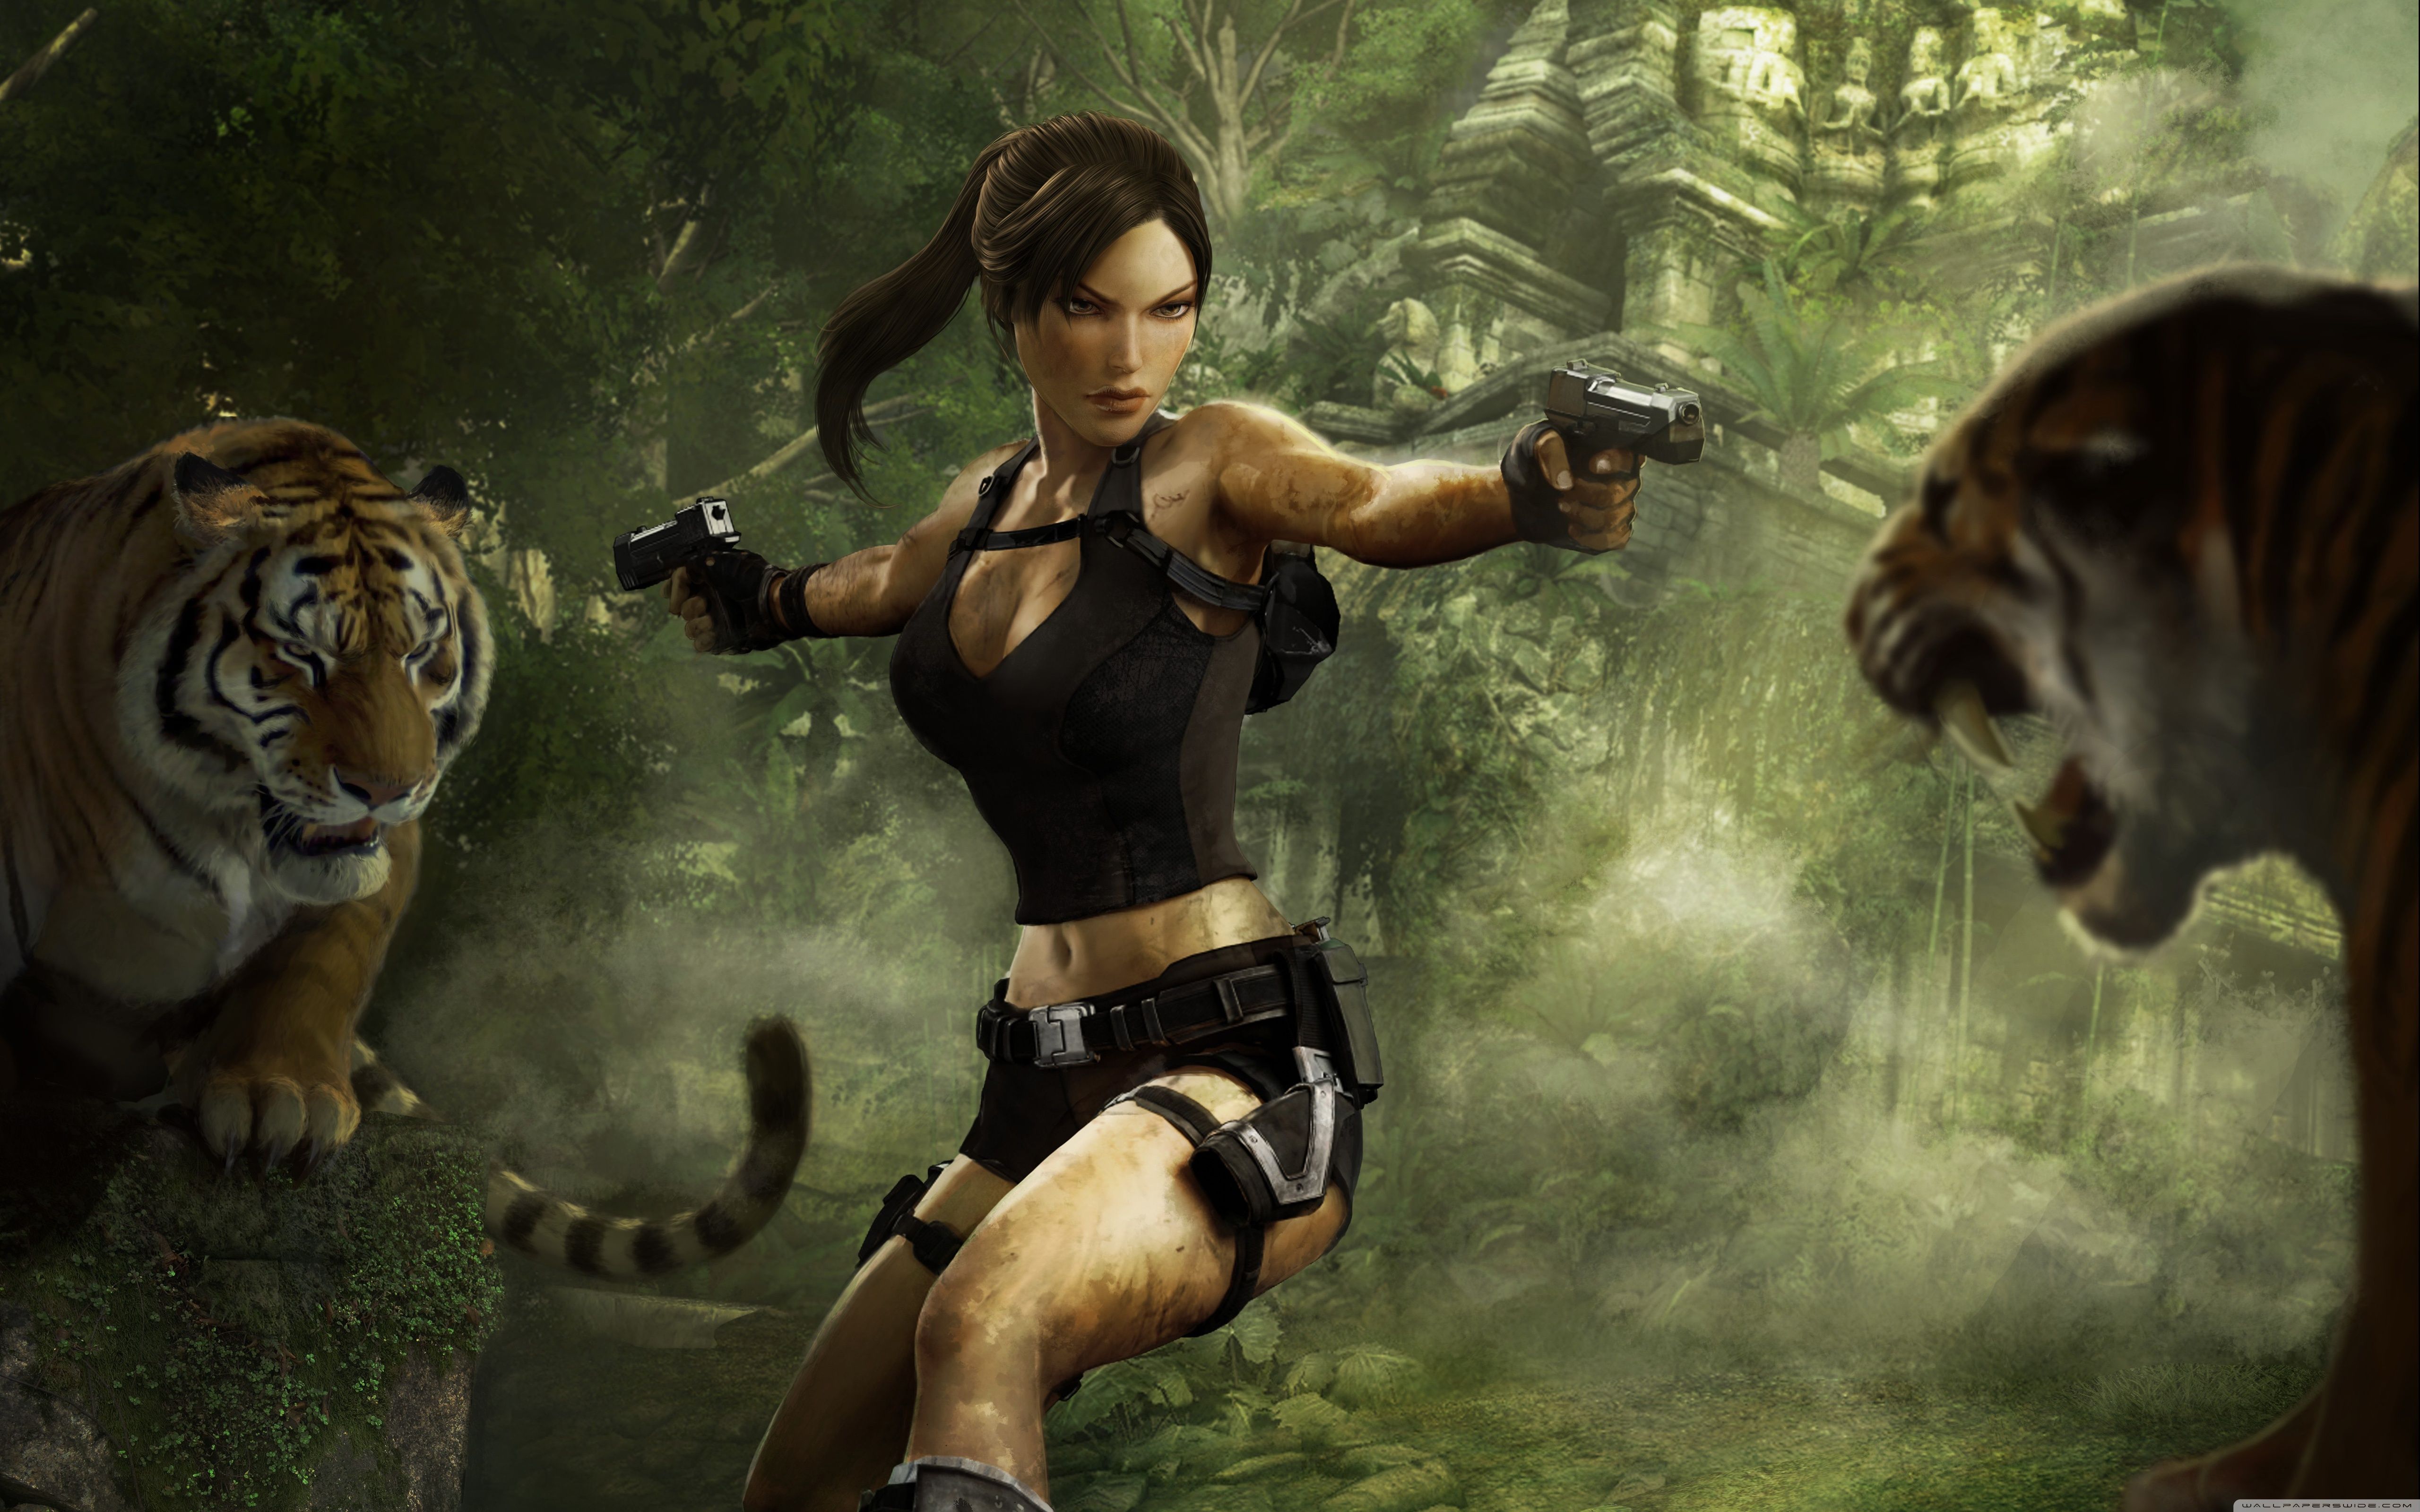  Tomb Raider Hintergrundbild 5120x3200. Tomb Raider: Underworld Wallpaper Free Tomb Raider: Underworld Background